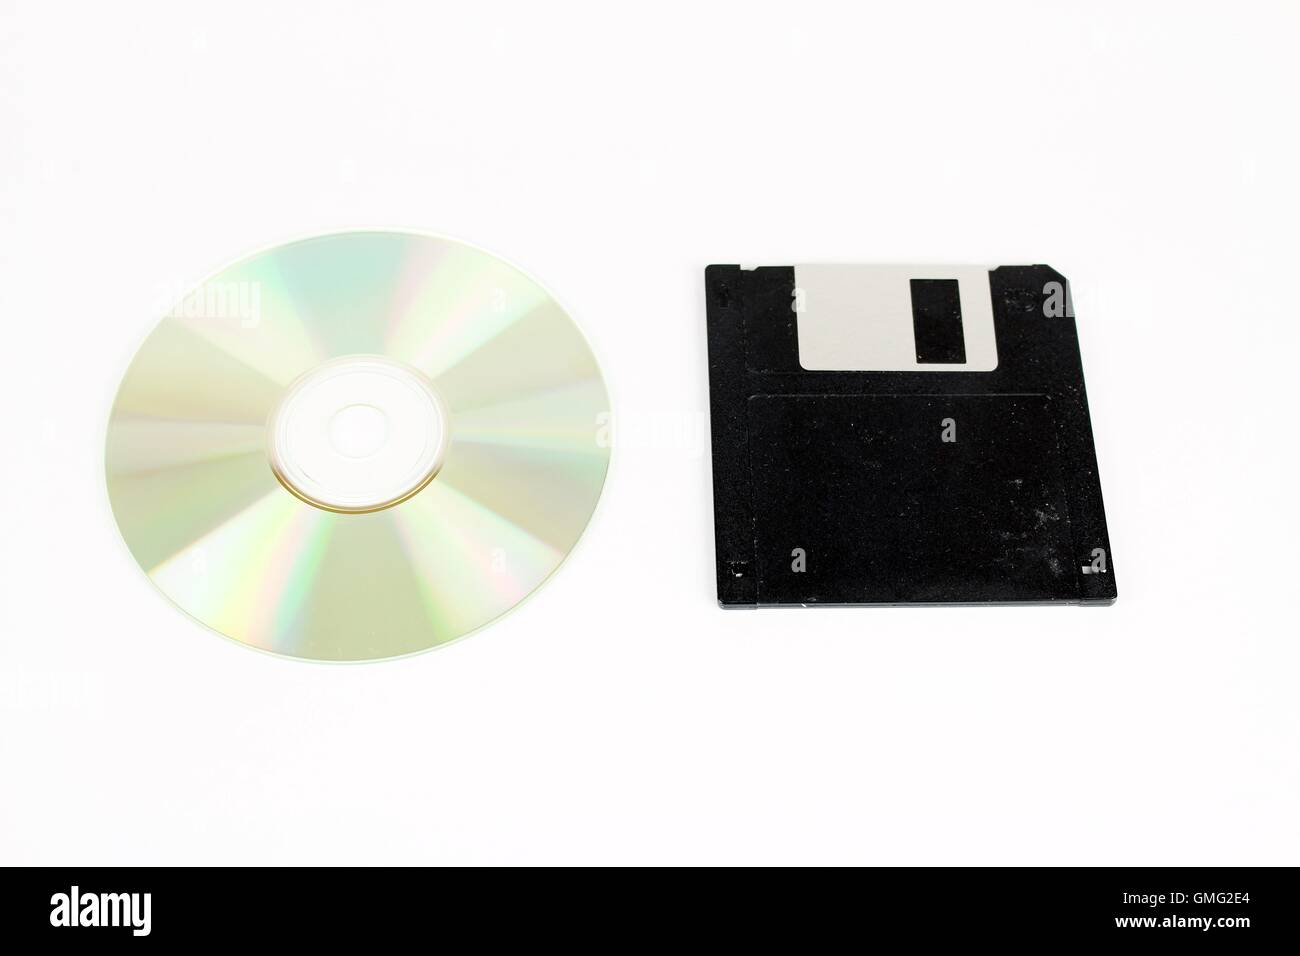 Vergleich der Cd-Rom und Diskettenlaufwerke, der PCs, die Vergangenheit und die Gegenwart oder Zukunft. Stockfoto